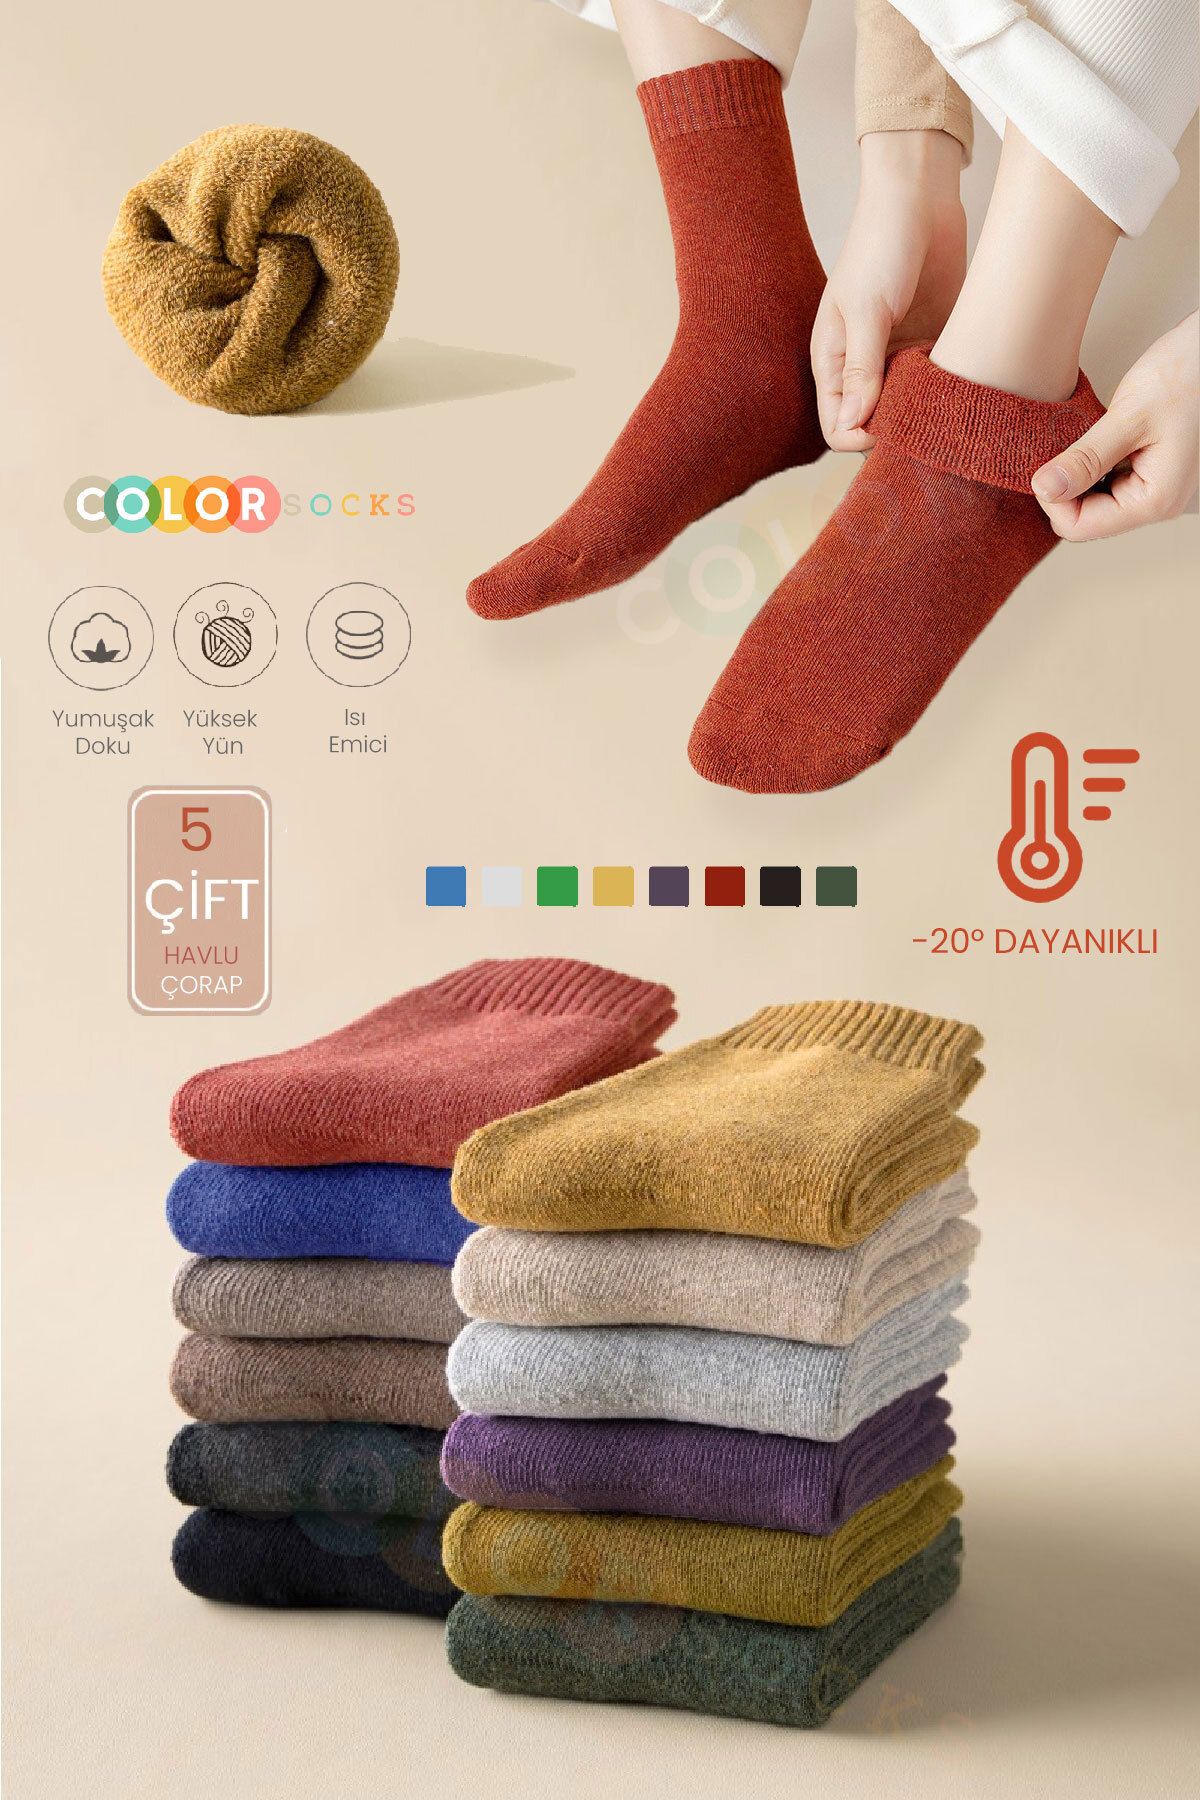 Color Socks 5 Çift Yüksek Havlu Kadın Çorap (ISI EMİCİ)